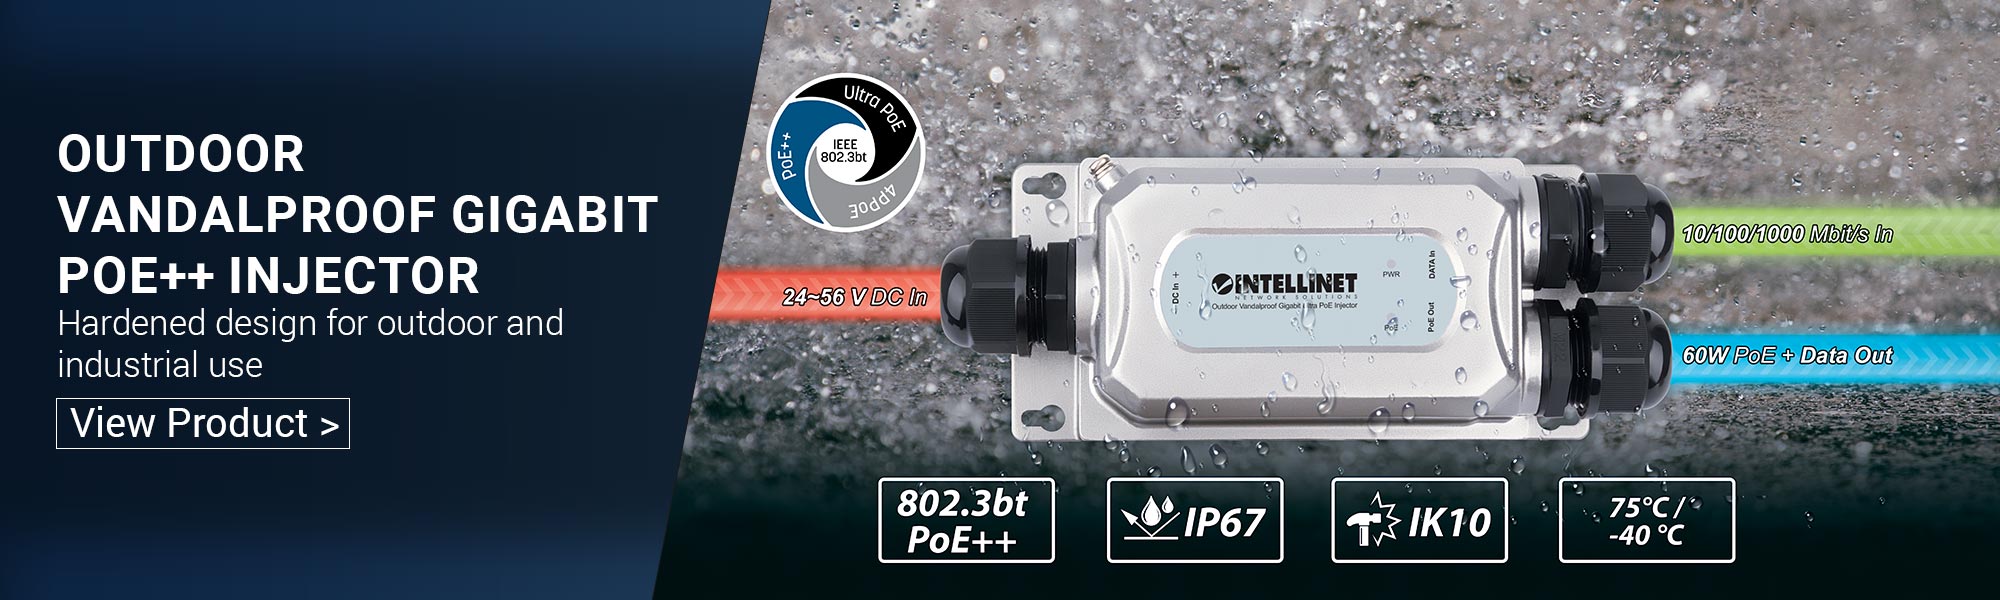 Intellinet 2-Port Gigabit Ultra PoE Injector (561488) – Intellinet Europe